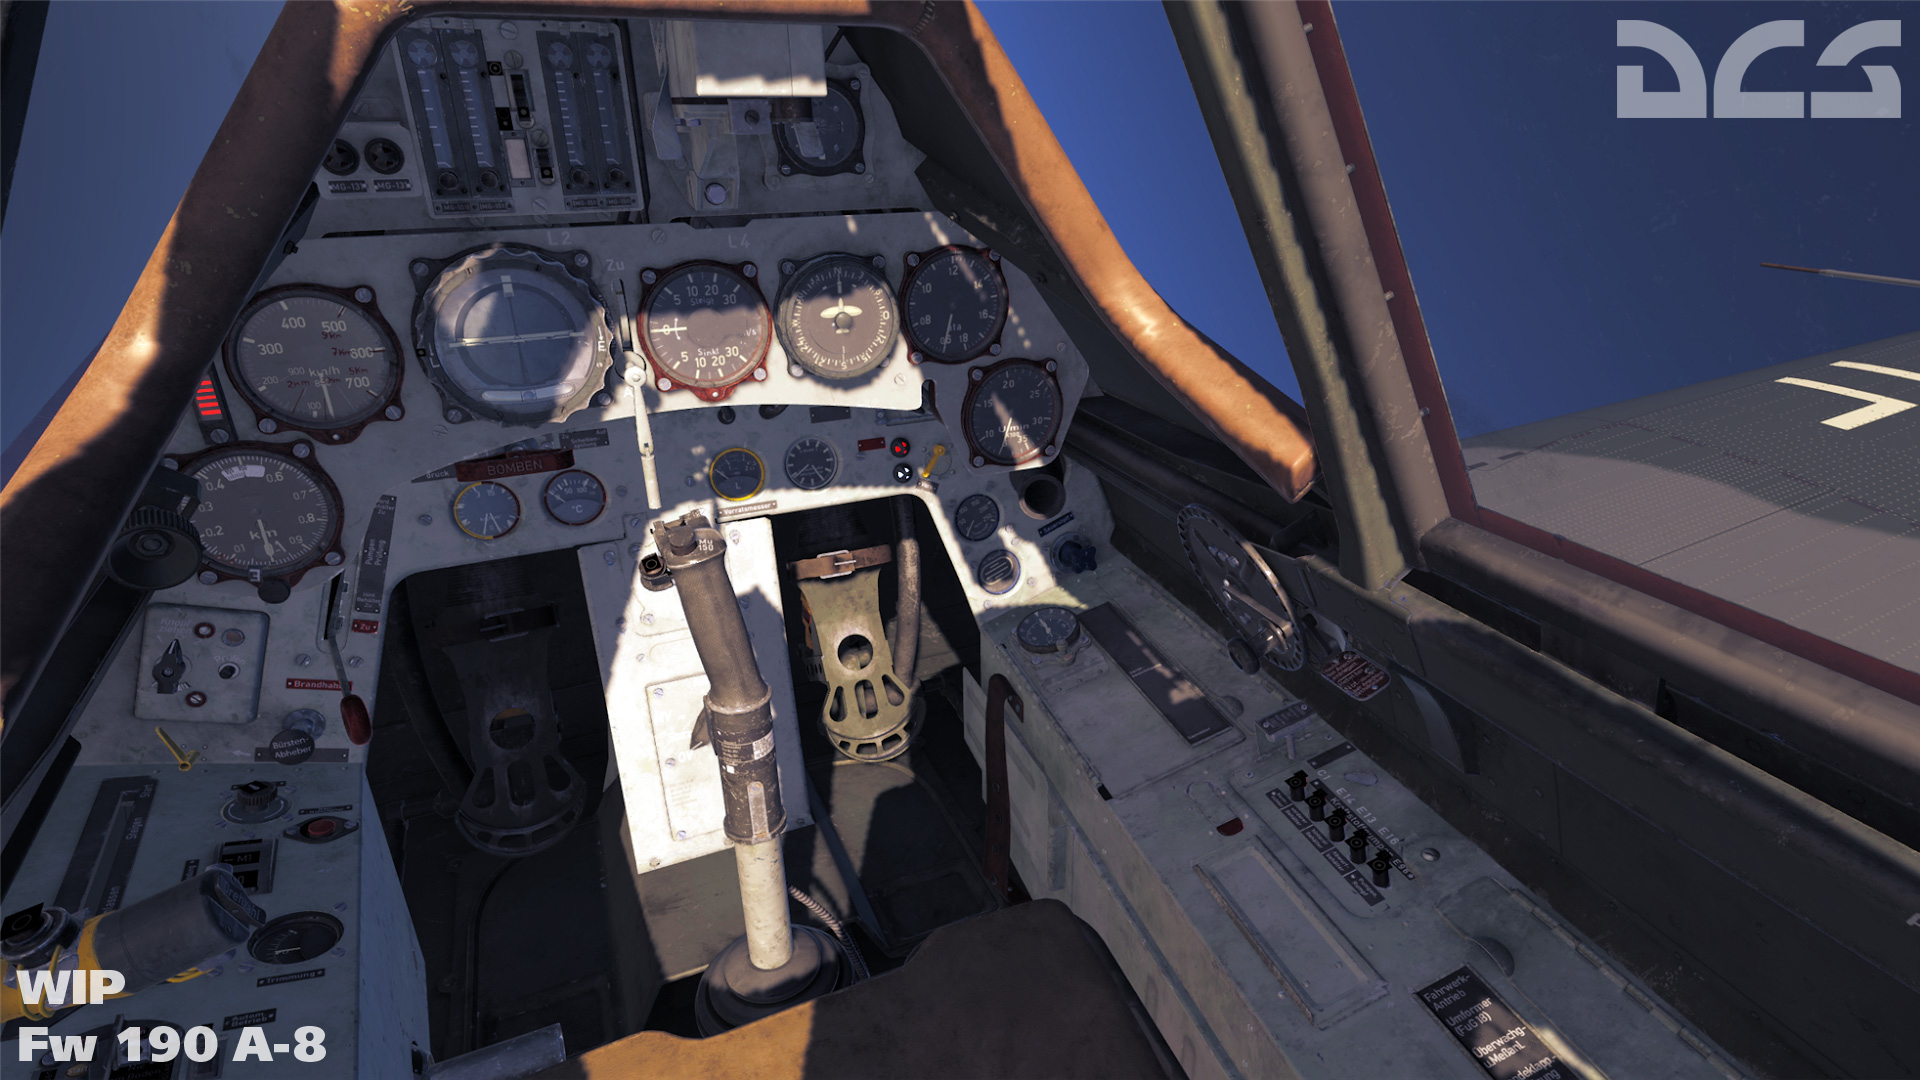 2018-10-04-Fw-190-A-8-cockpit-WIP-2.jpg